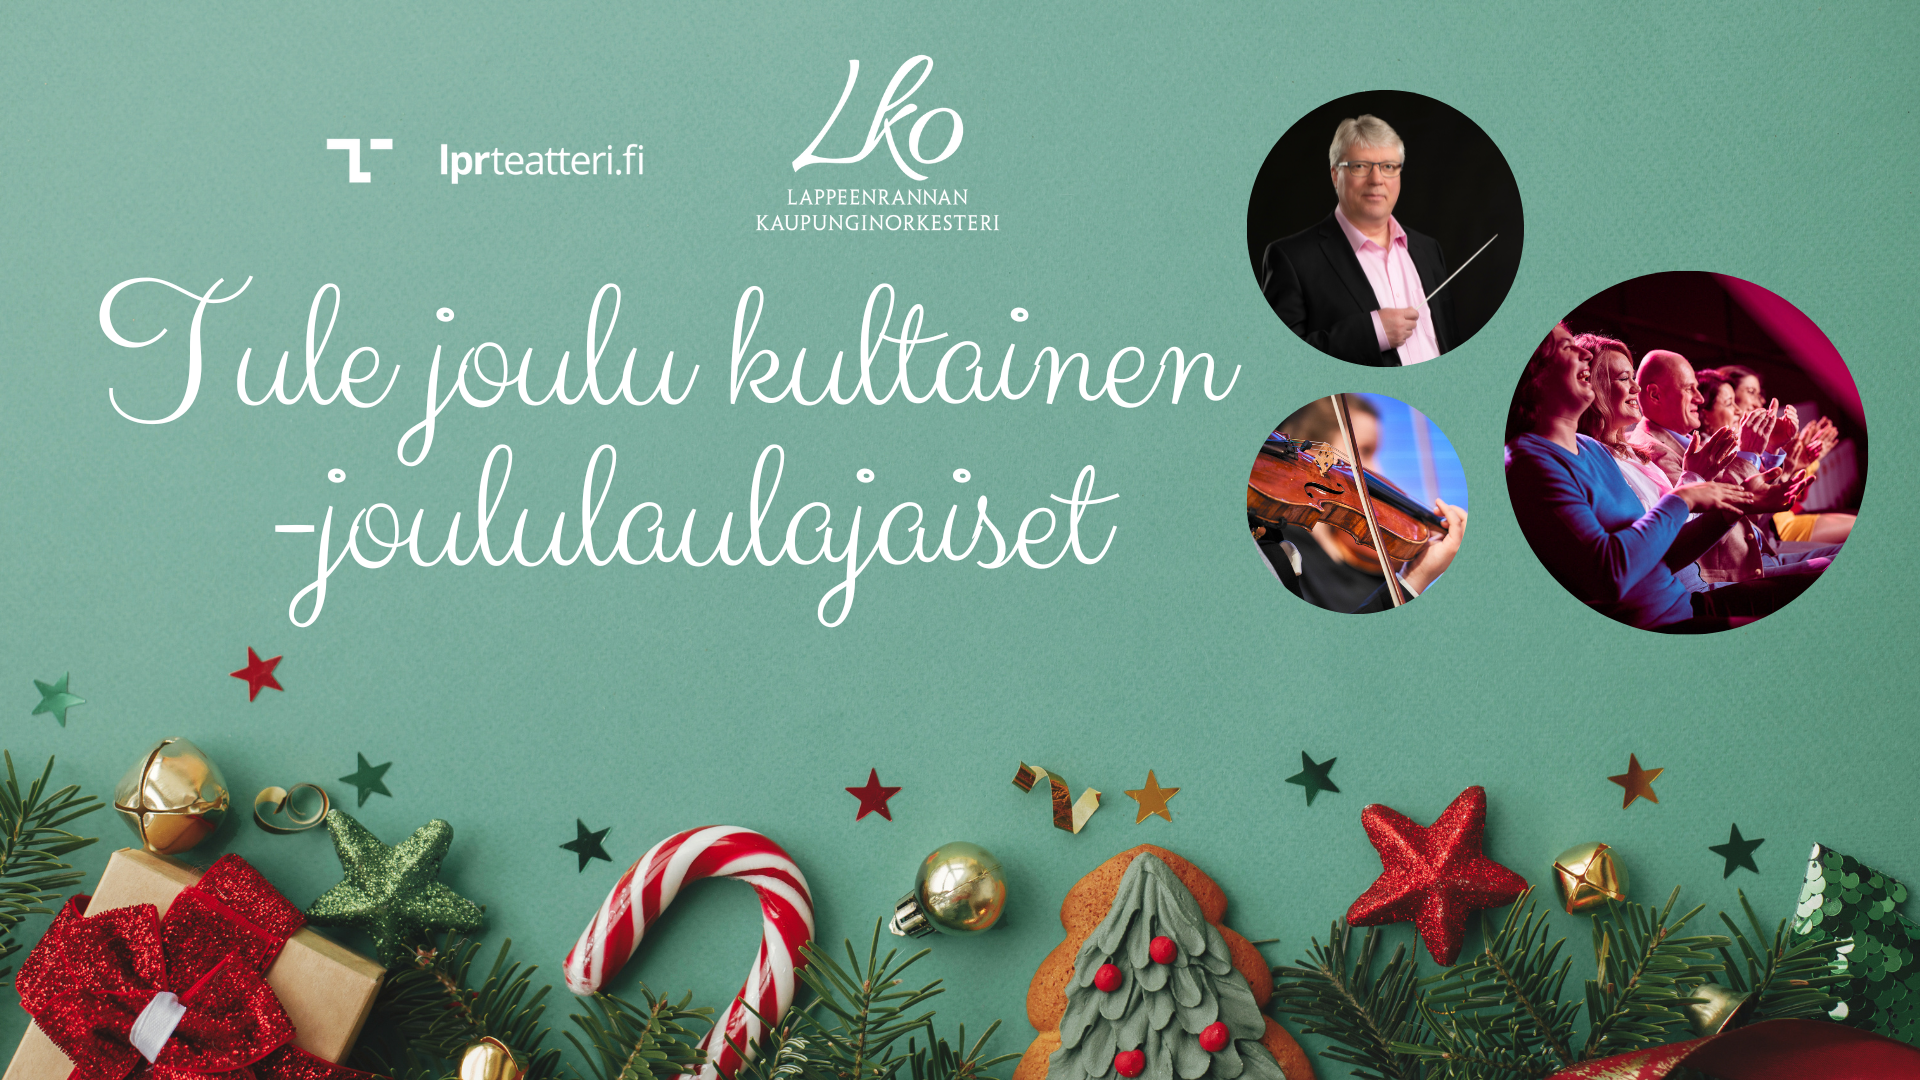 Teksti "Tule joulu kultainen -joululaulajaiset", ympärillä joulukoristeita, havuoksia sekä joulun herkkuja sekä ympyröissä kuvat orkesterin jäsenistä ja yleisöstä.